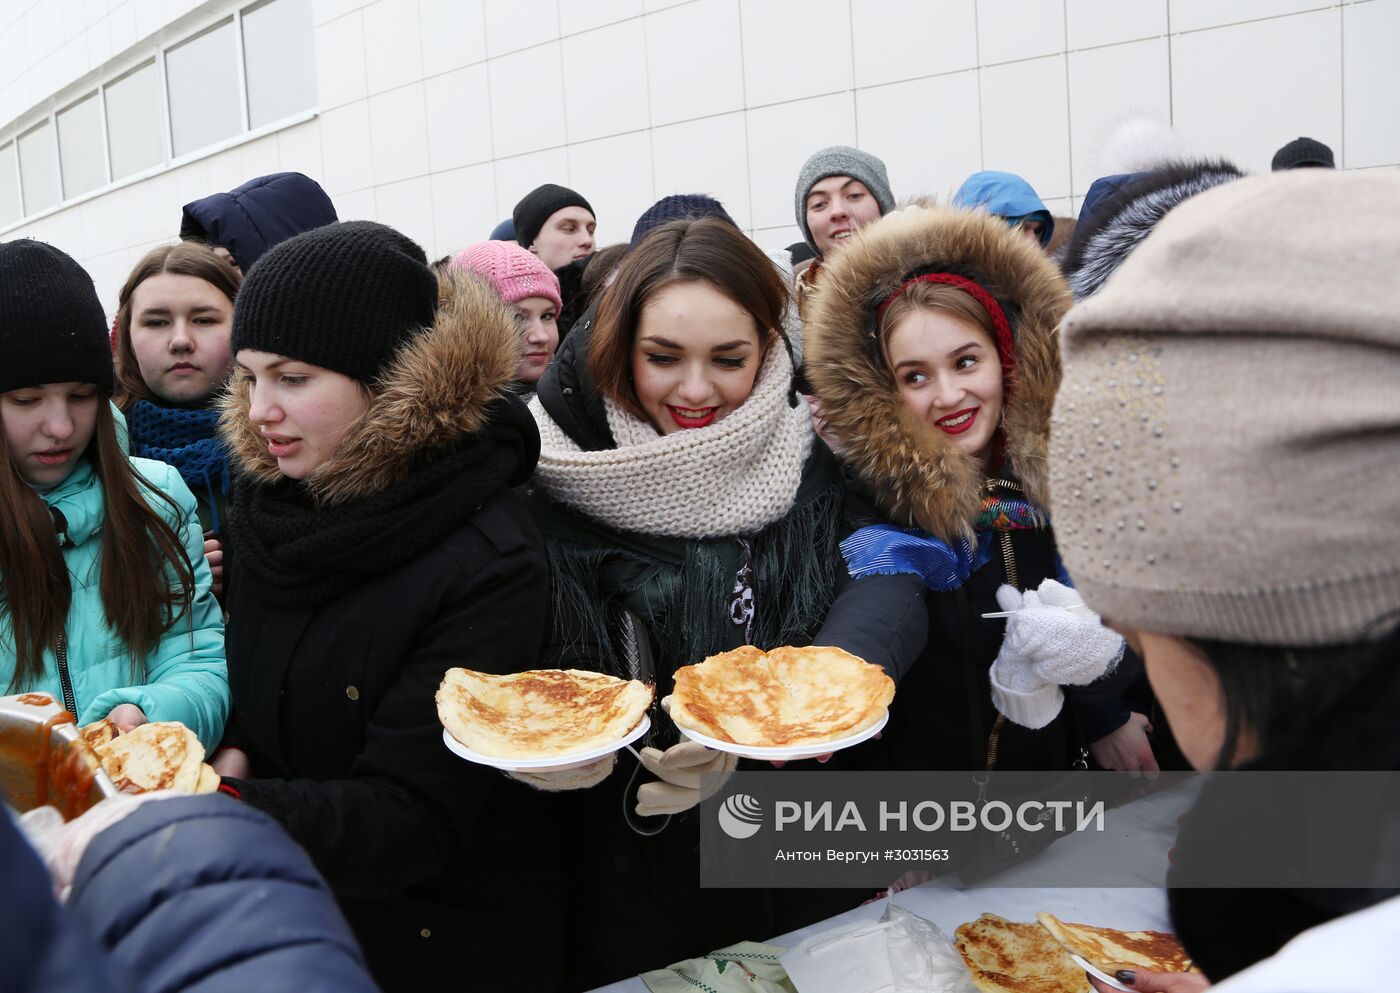 Массовое масленичное гуляние "Блинно-сырное веселье" в Белгороде